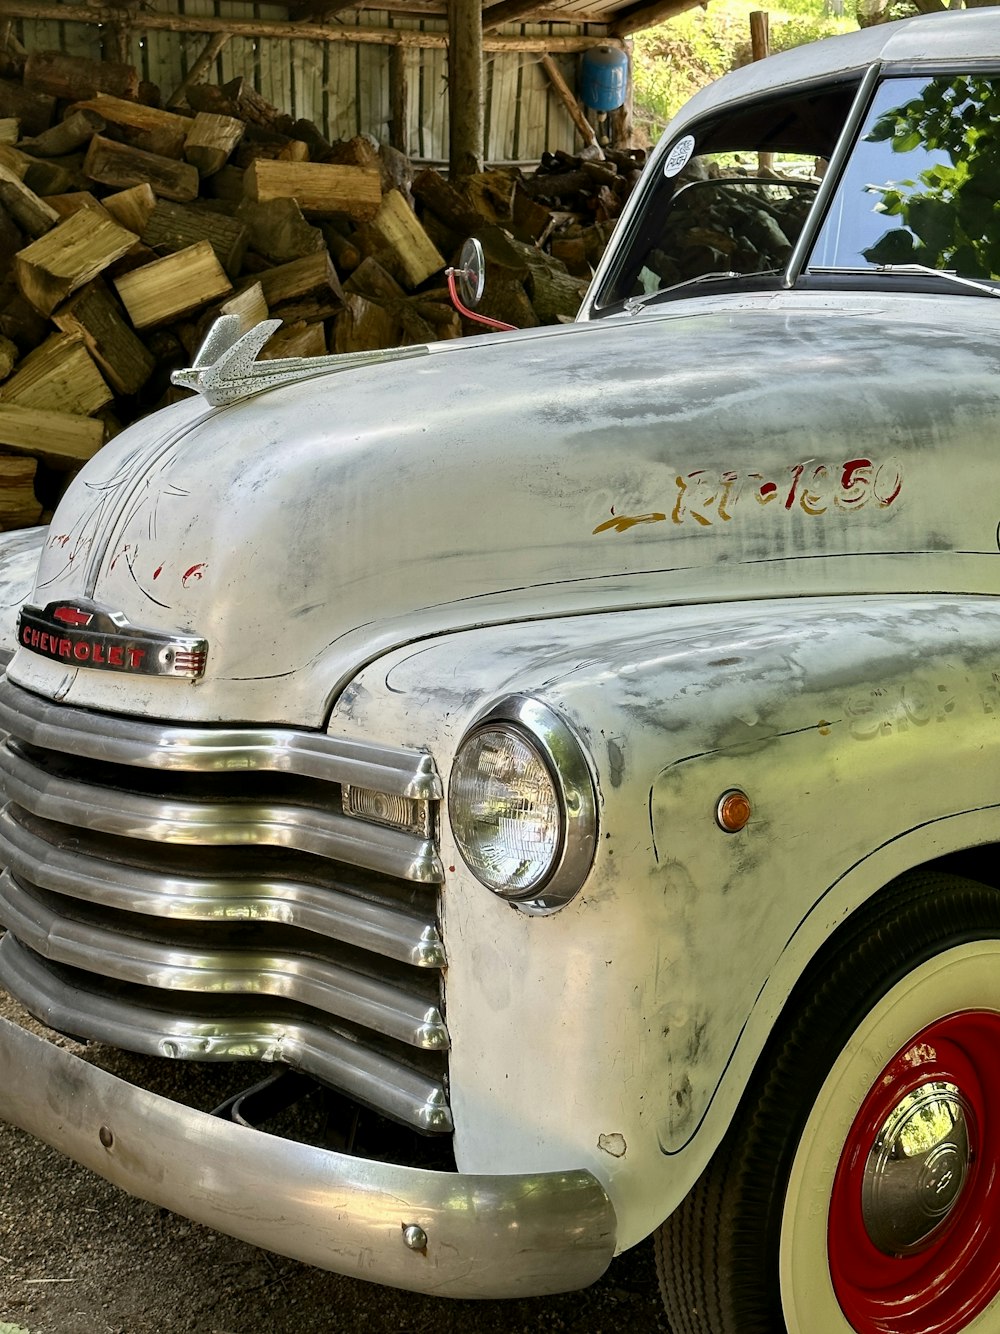 Un vecchio camion parcheggiato accanto a una catasta di legna